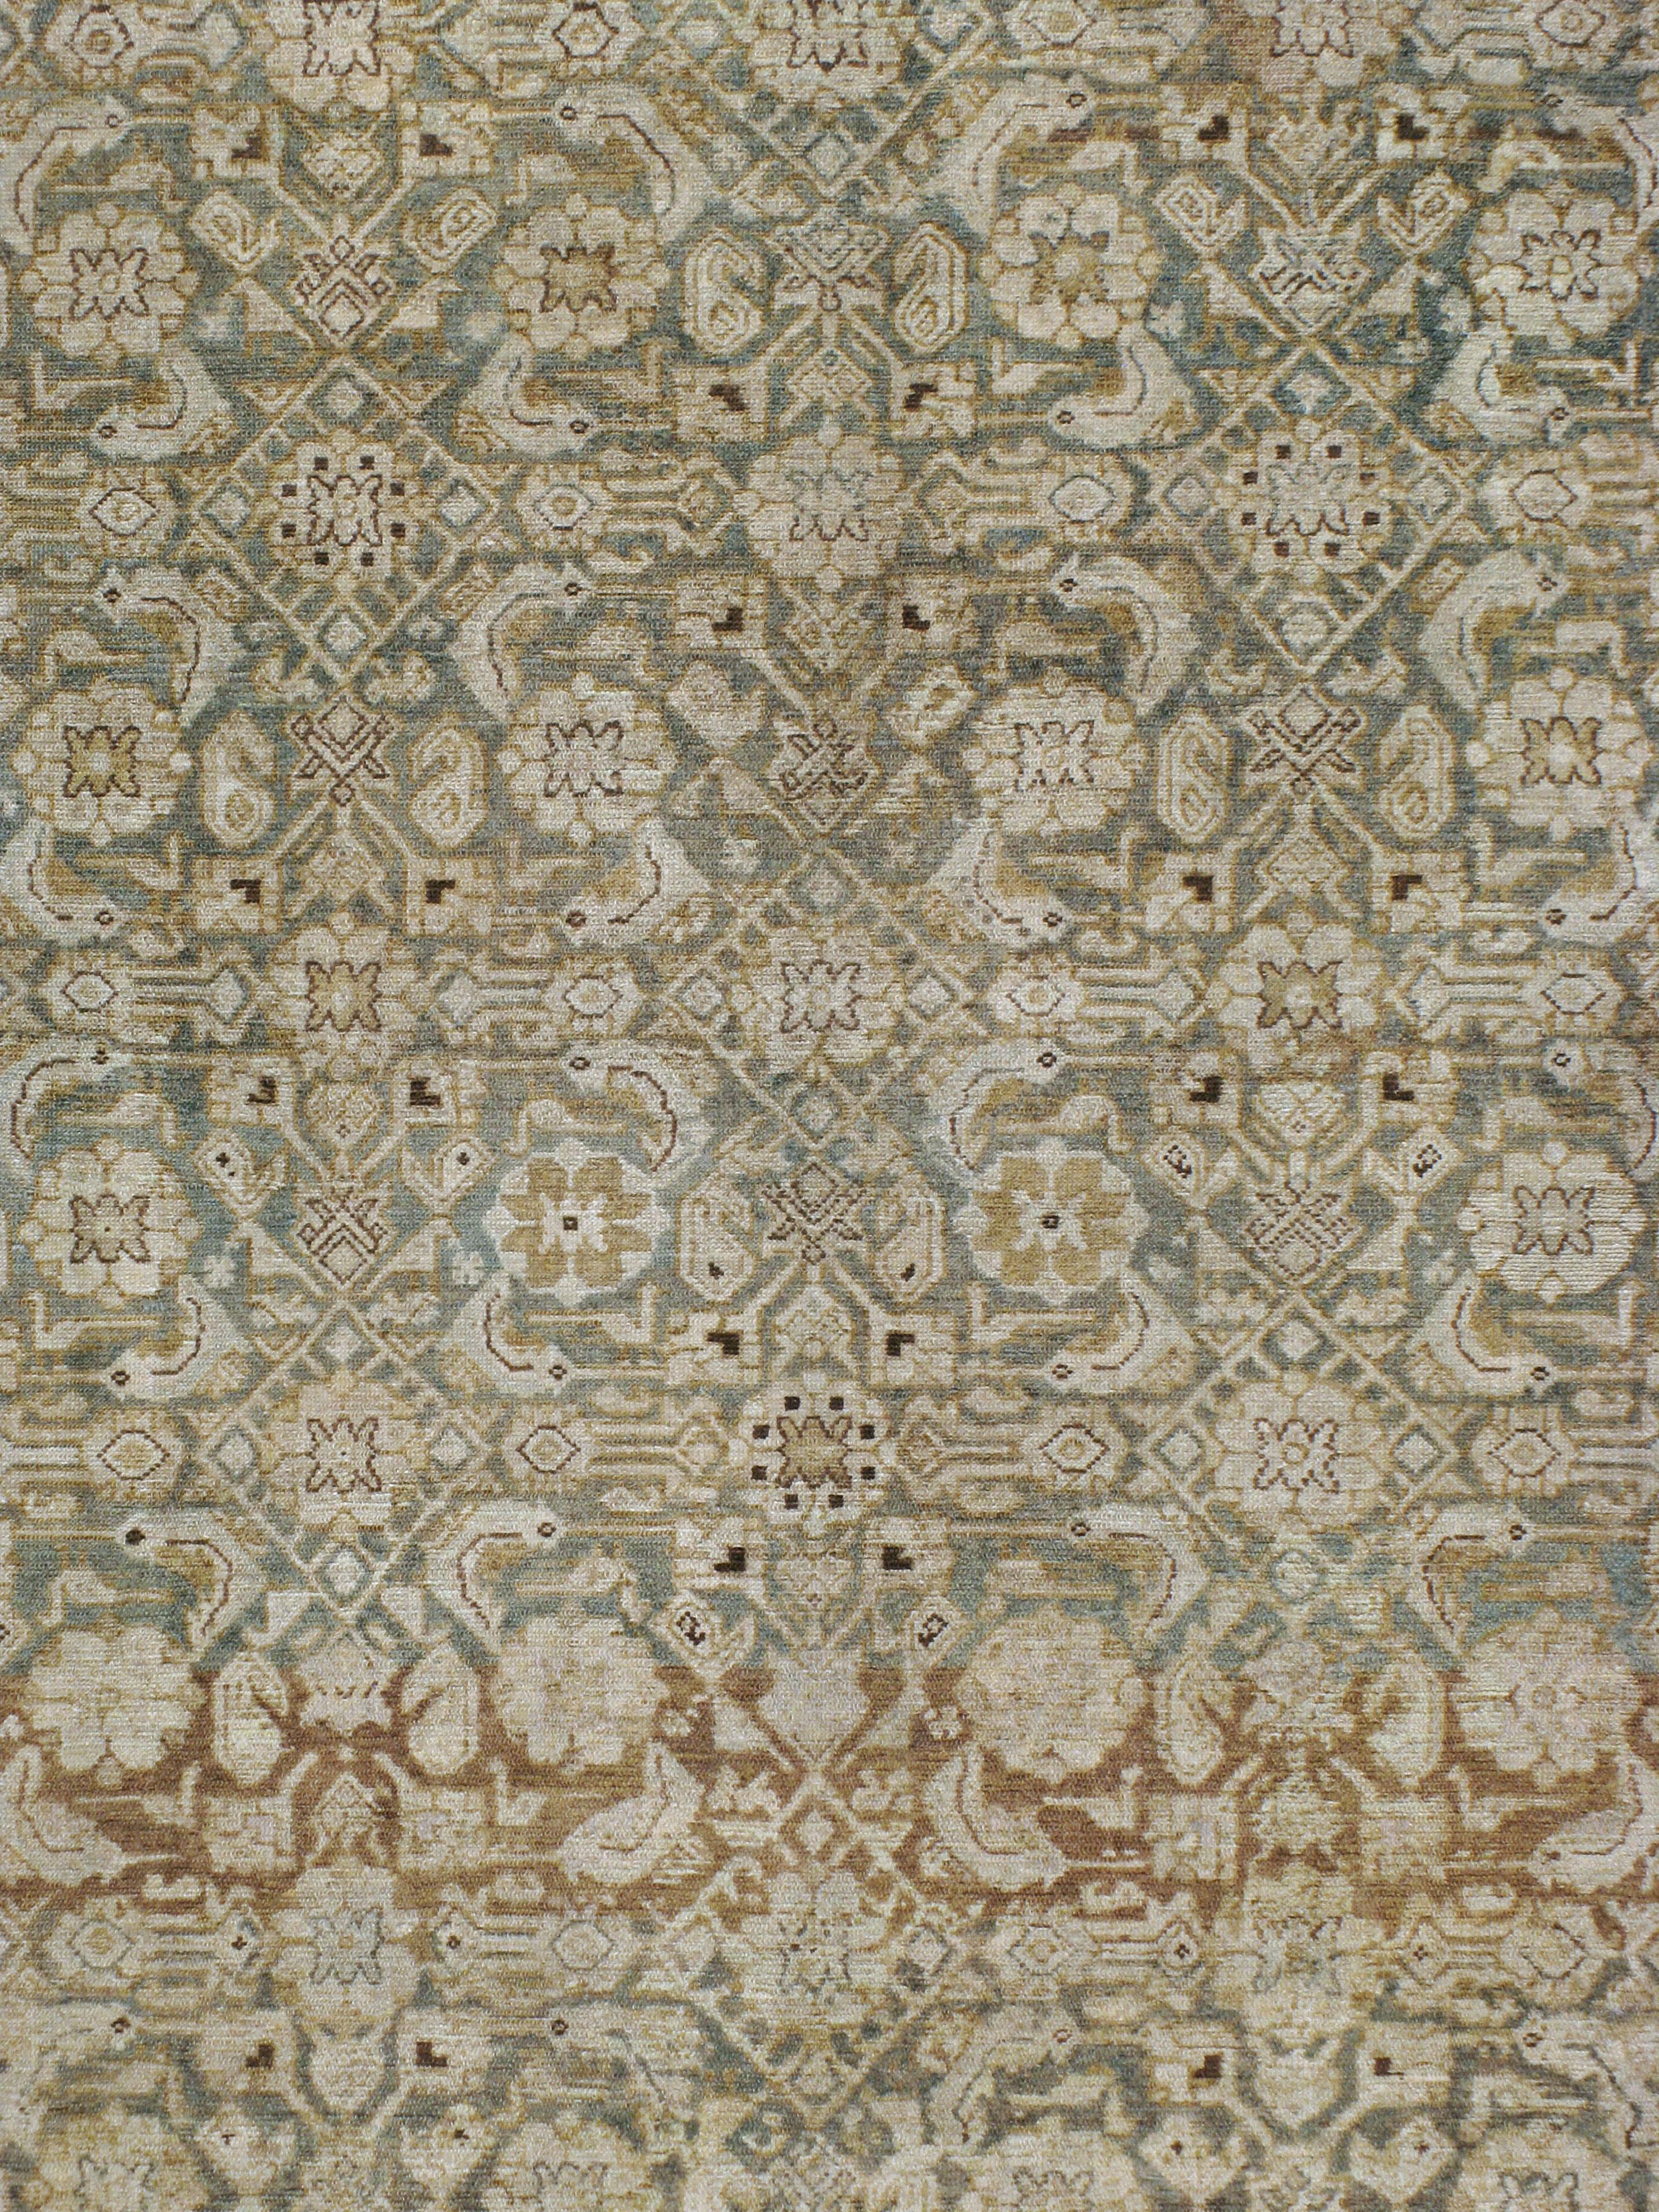 Ein antiker persischer Malayer Teppich aus dem frühen 20. Jahrhundert.

Maße: 8' 7